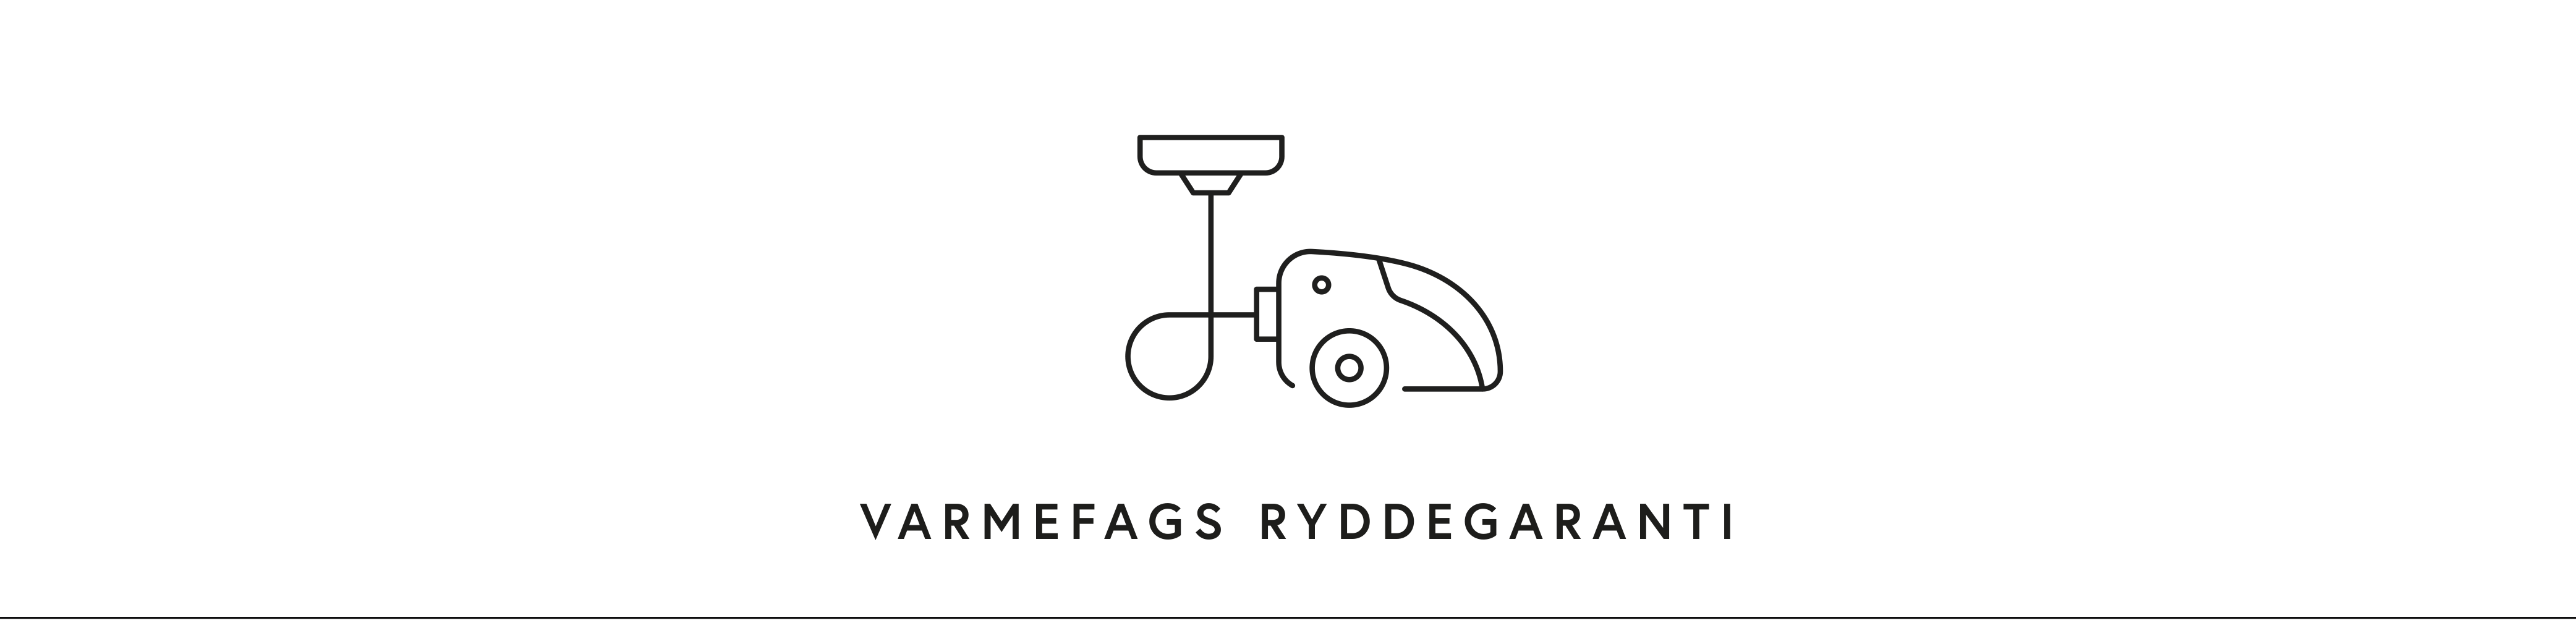 Logo og tekst med "Varmefag ryddegaranti" på banner